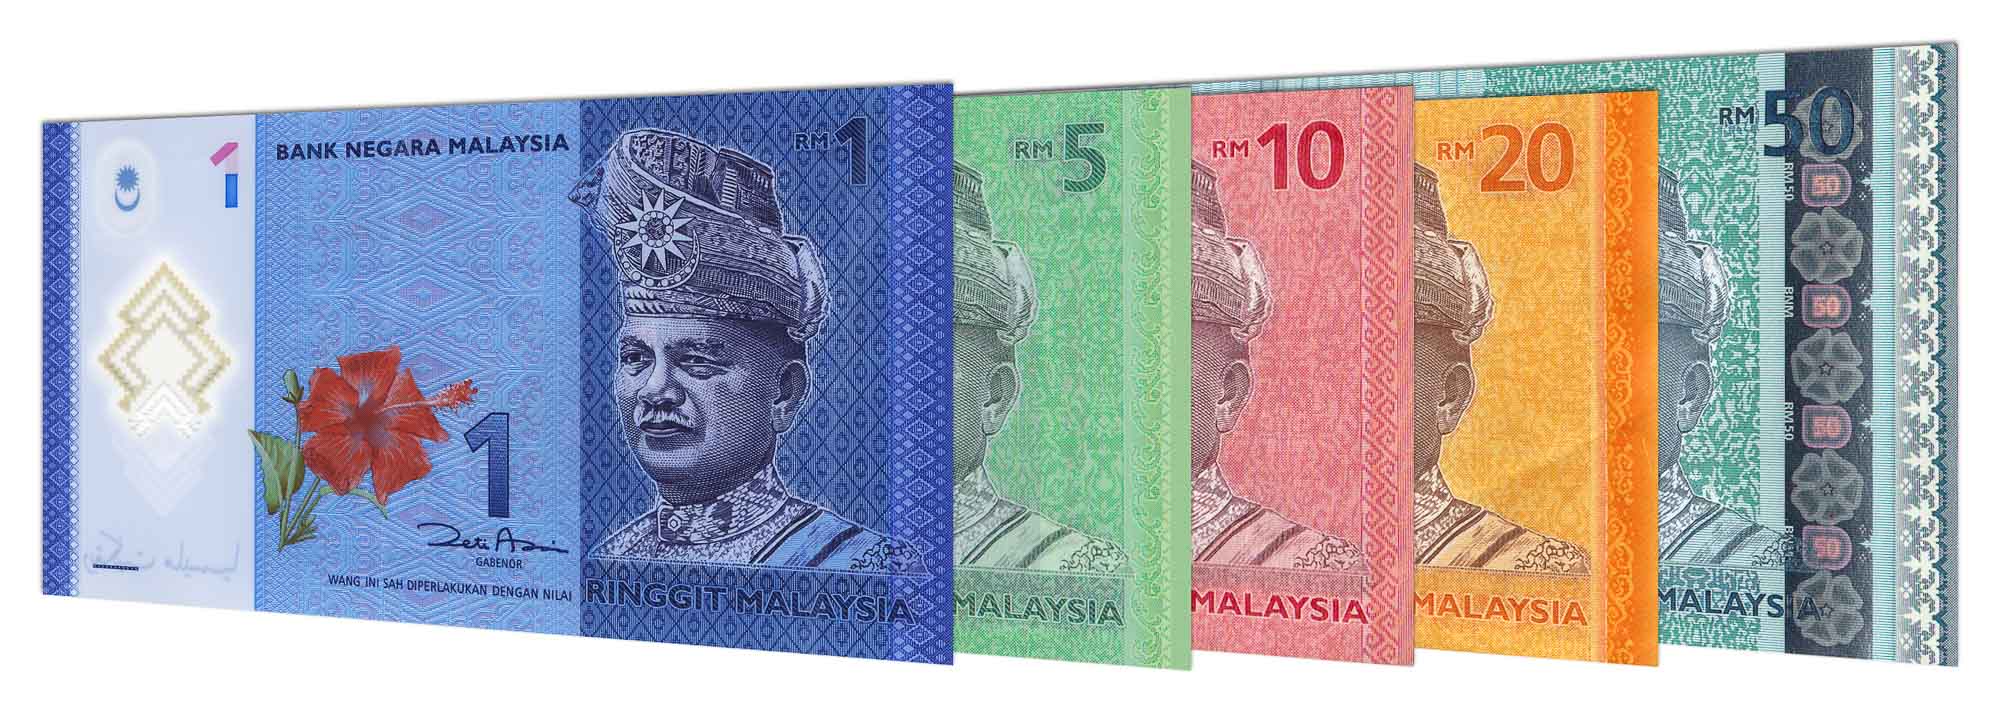 Malaysian ringgit forex card